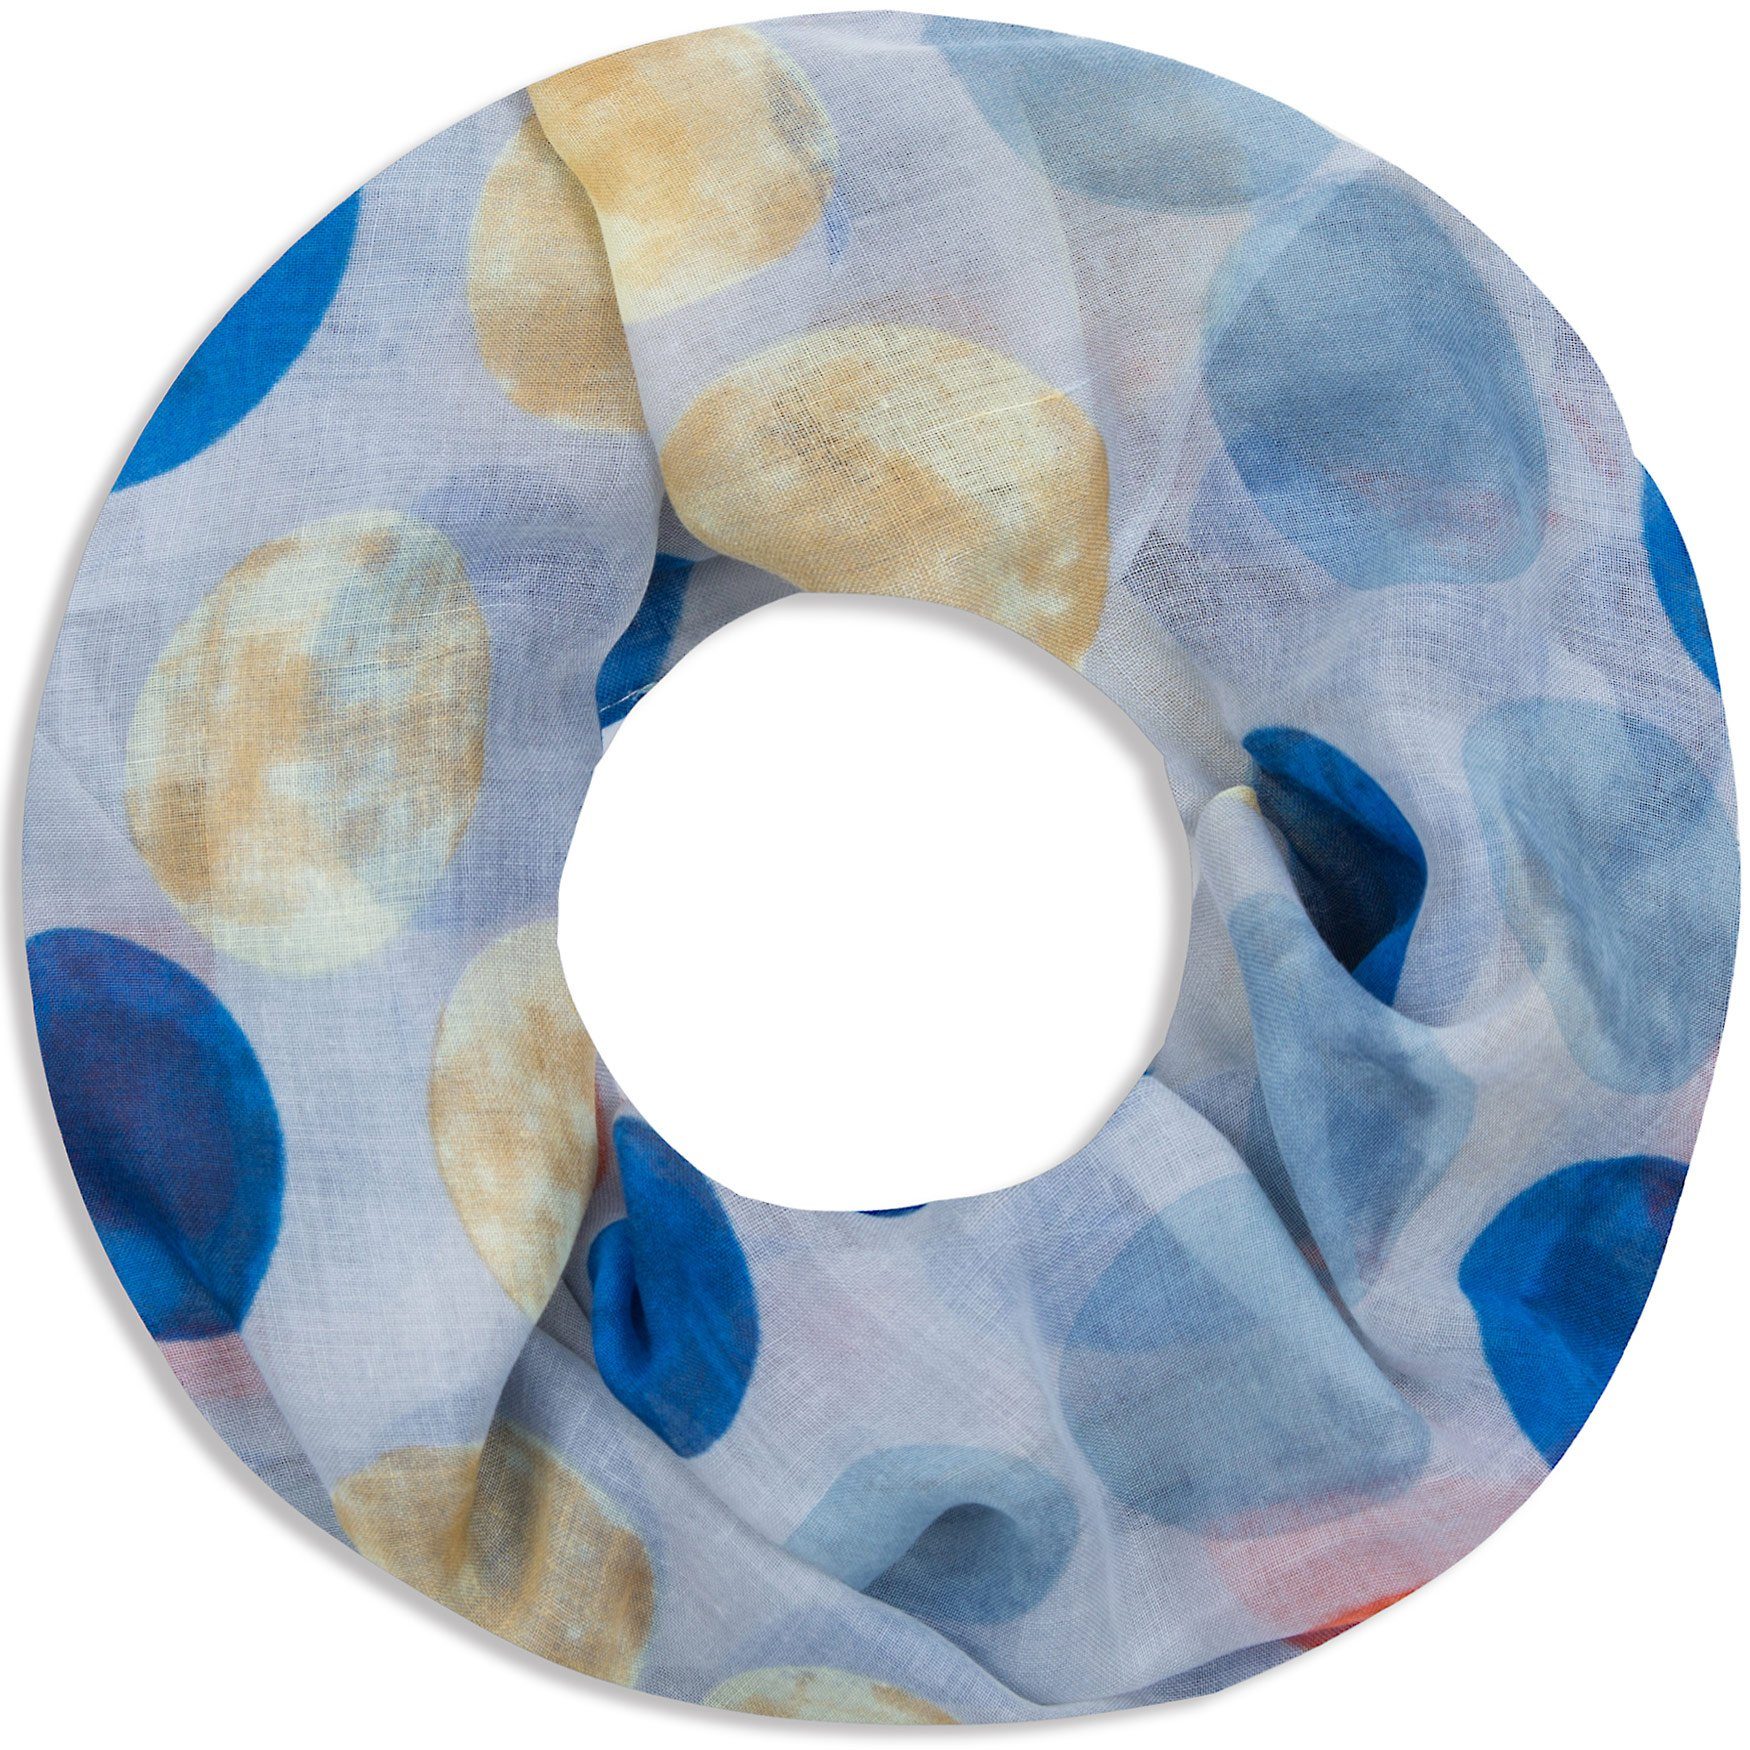 Faera Loop, Damen Schal gepunkteter weicher und leichter Loopschal Rundschal mit großen Punkten hellblau